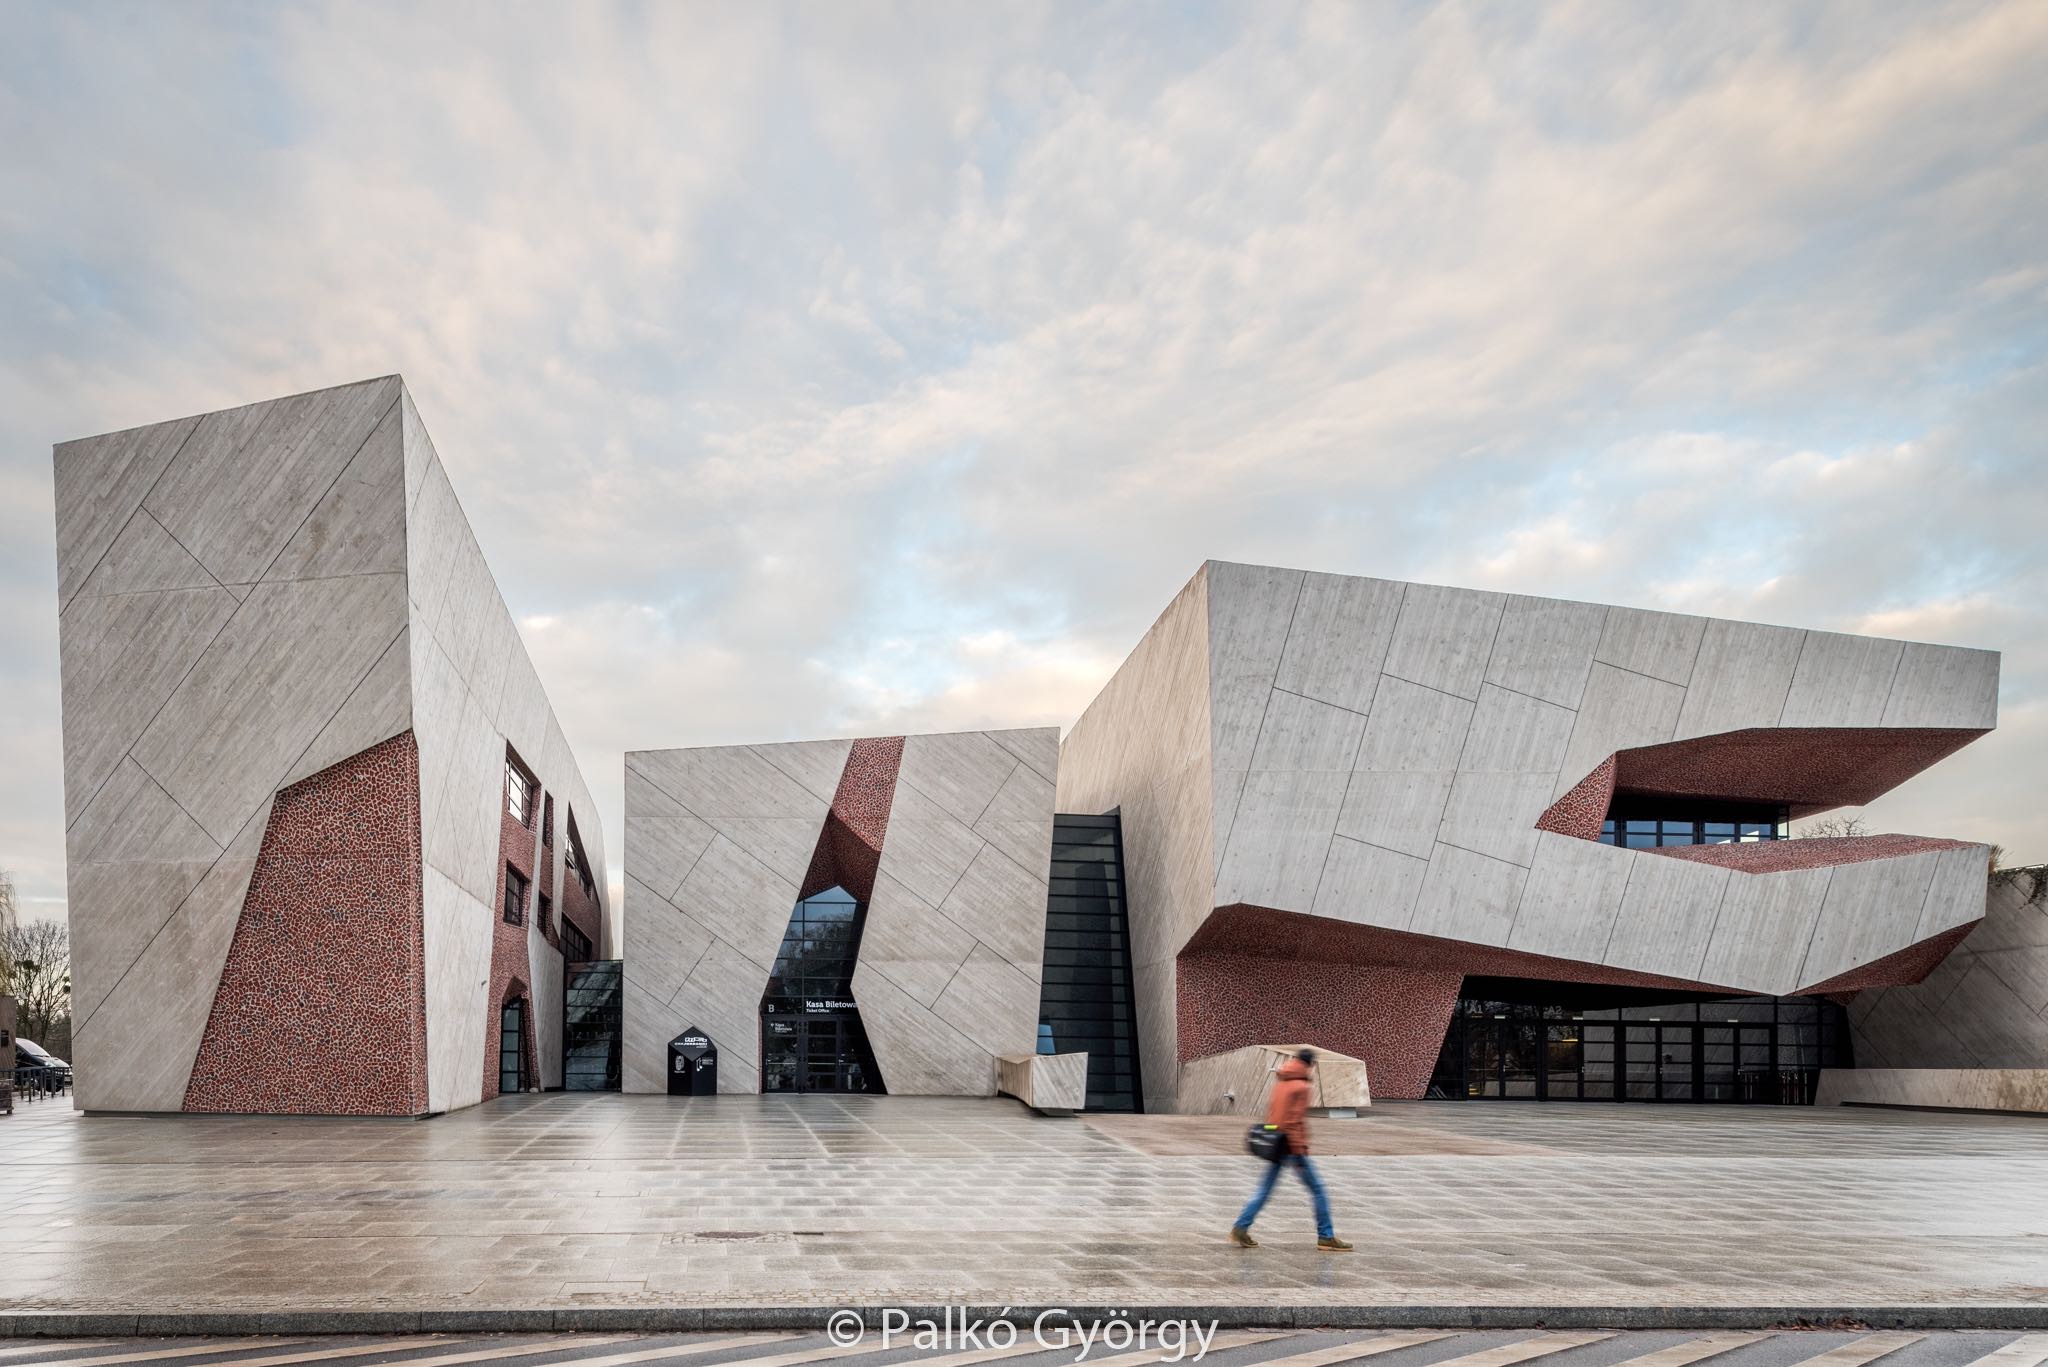 Kornelio Musika Eskola — Basque cultural institute